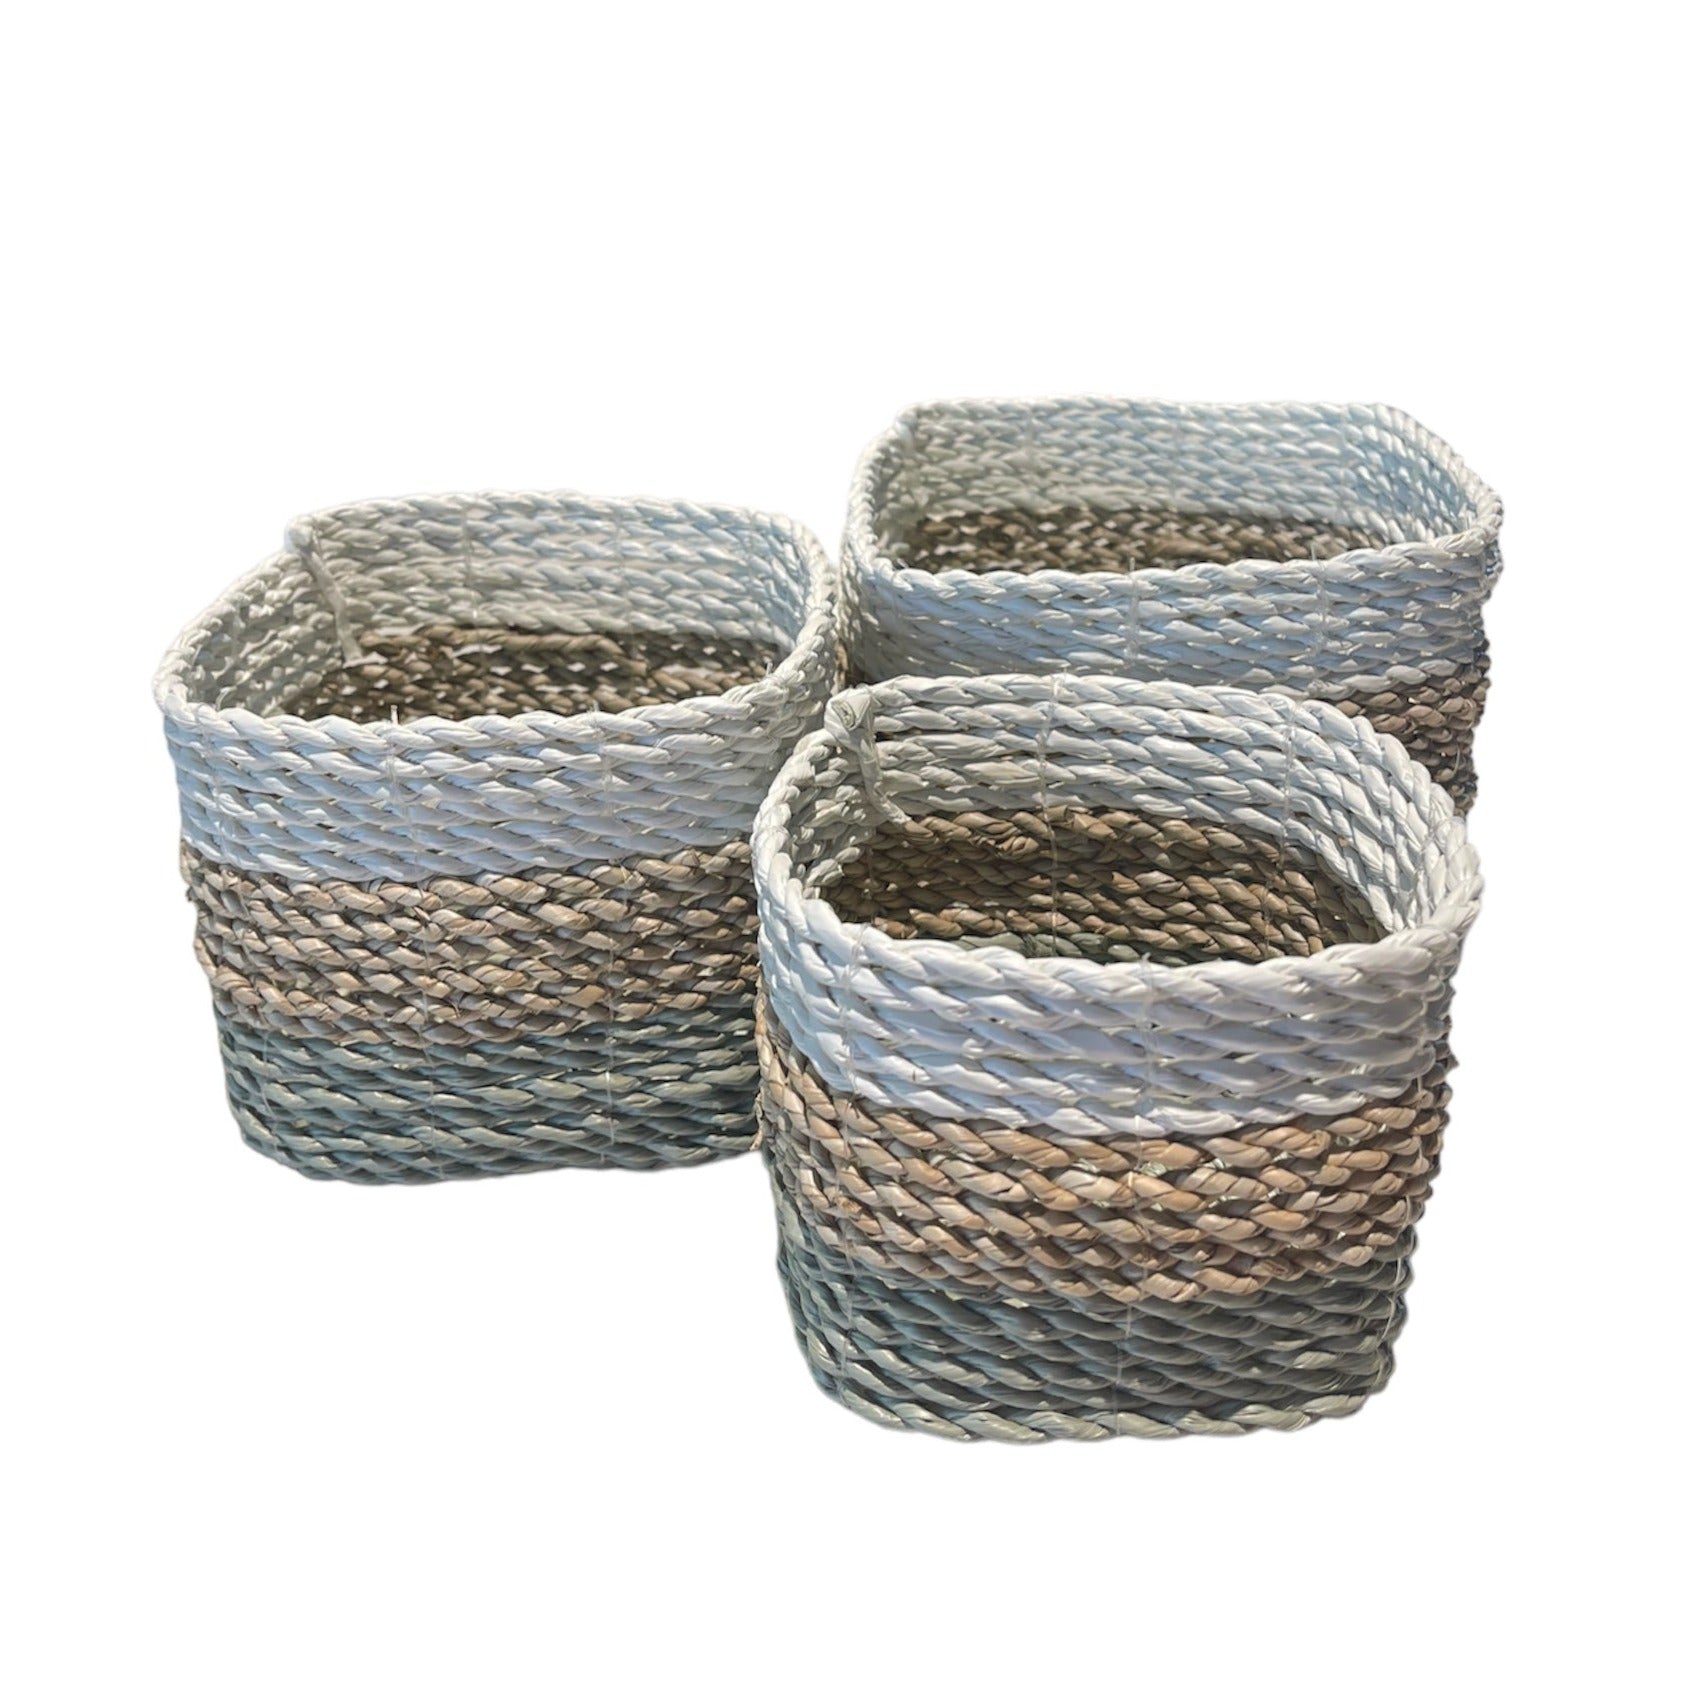 Seagrass Striped Square Basket